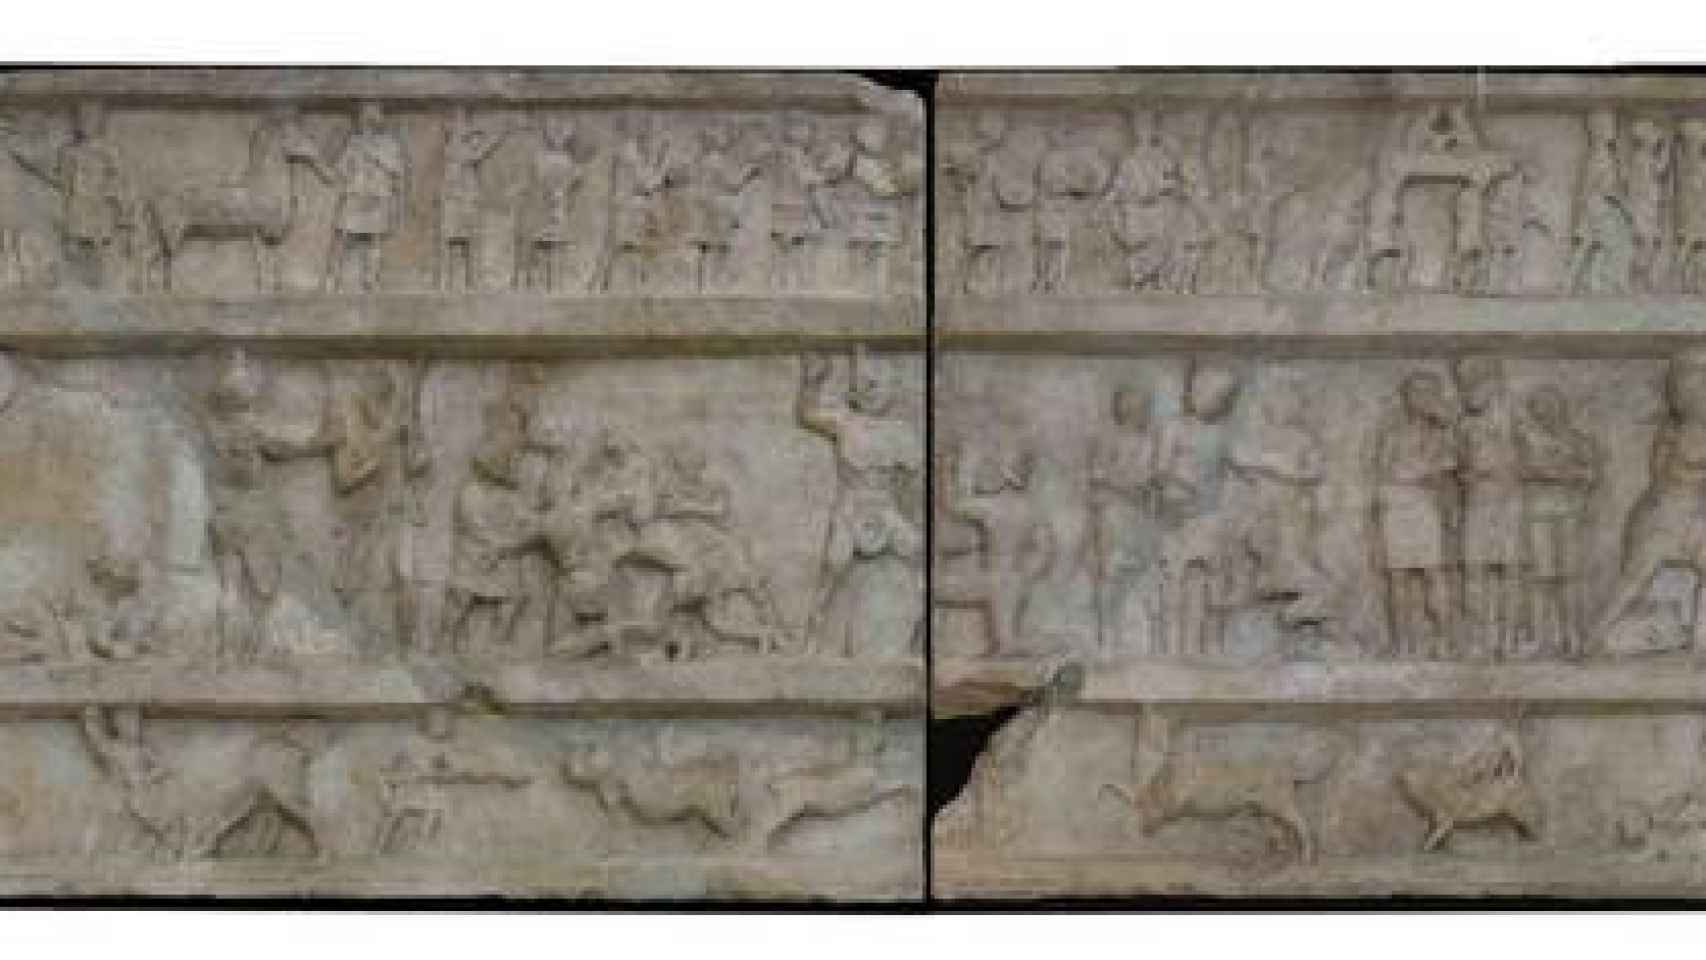 La batalla de gladiadores tallada sobre la tumba.